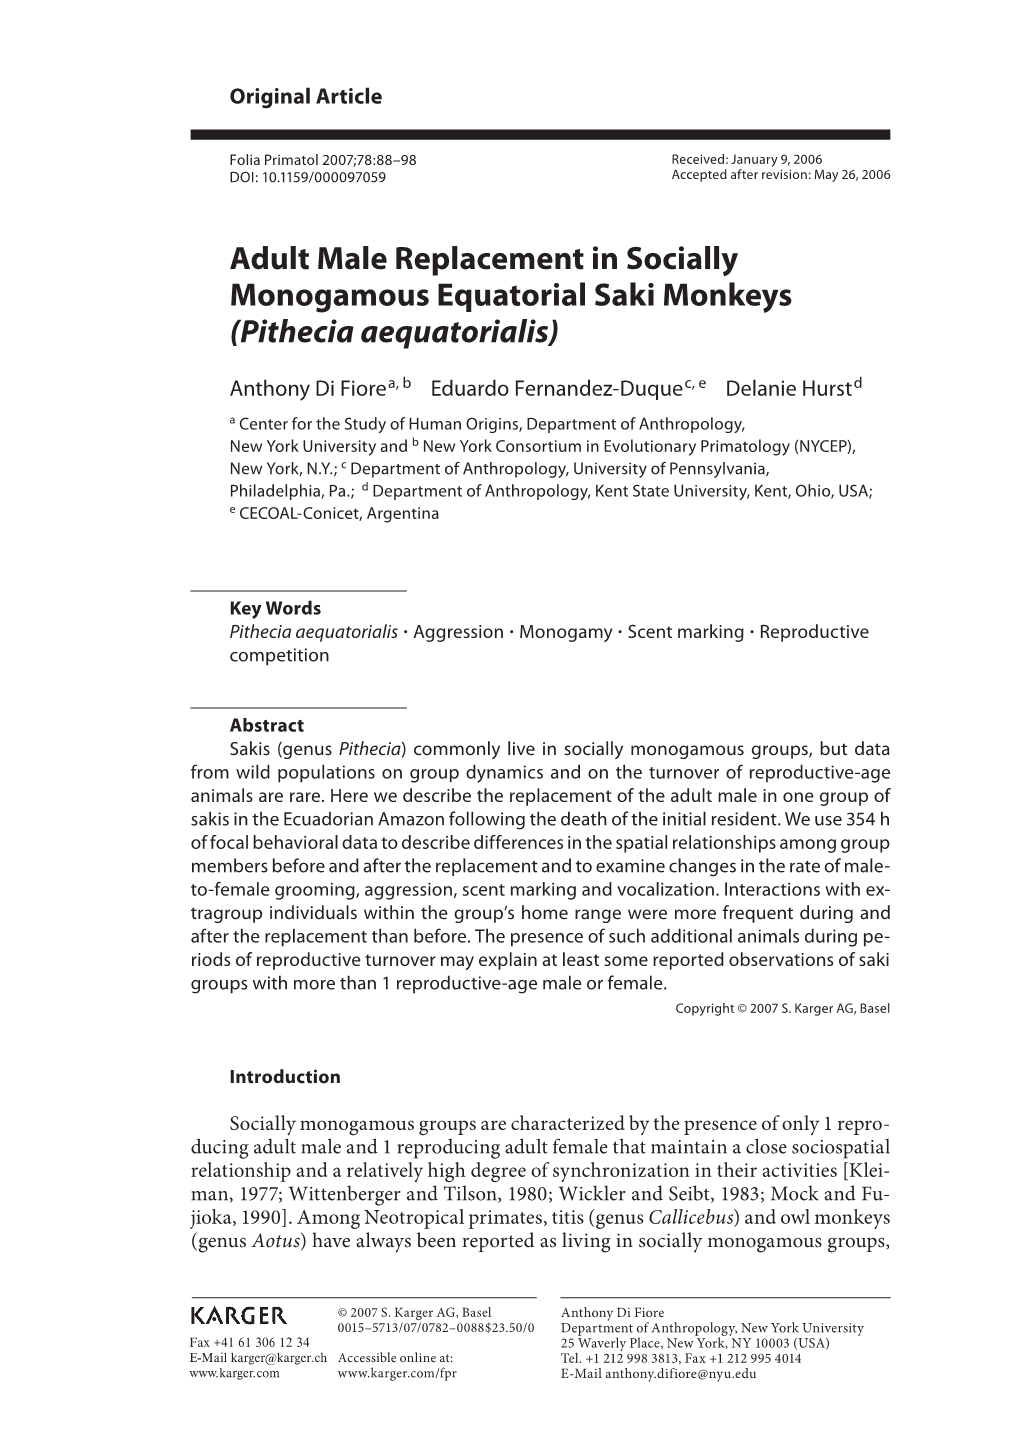 Adult Male Replacement in Socially Monogamous Equatorial Saki Monkeys (Pithecia Aequatorialis)